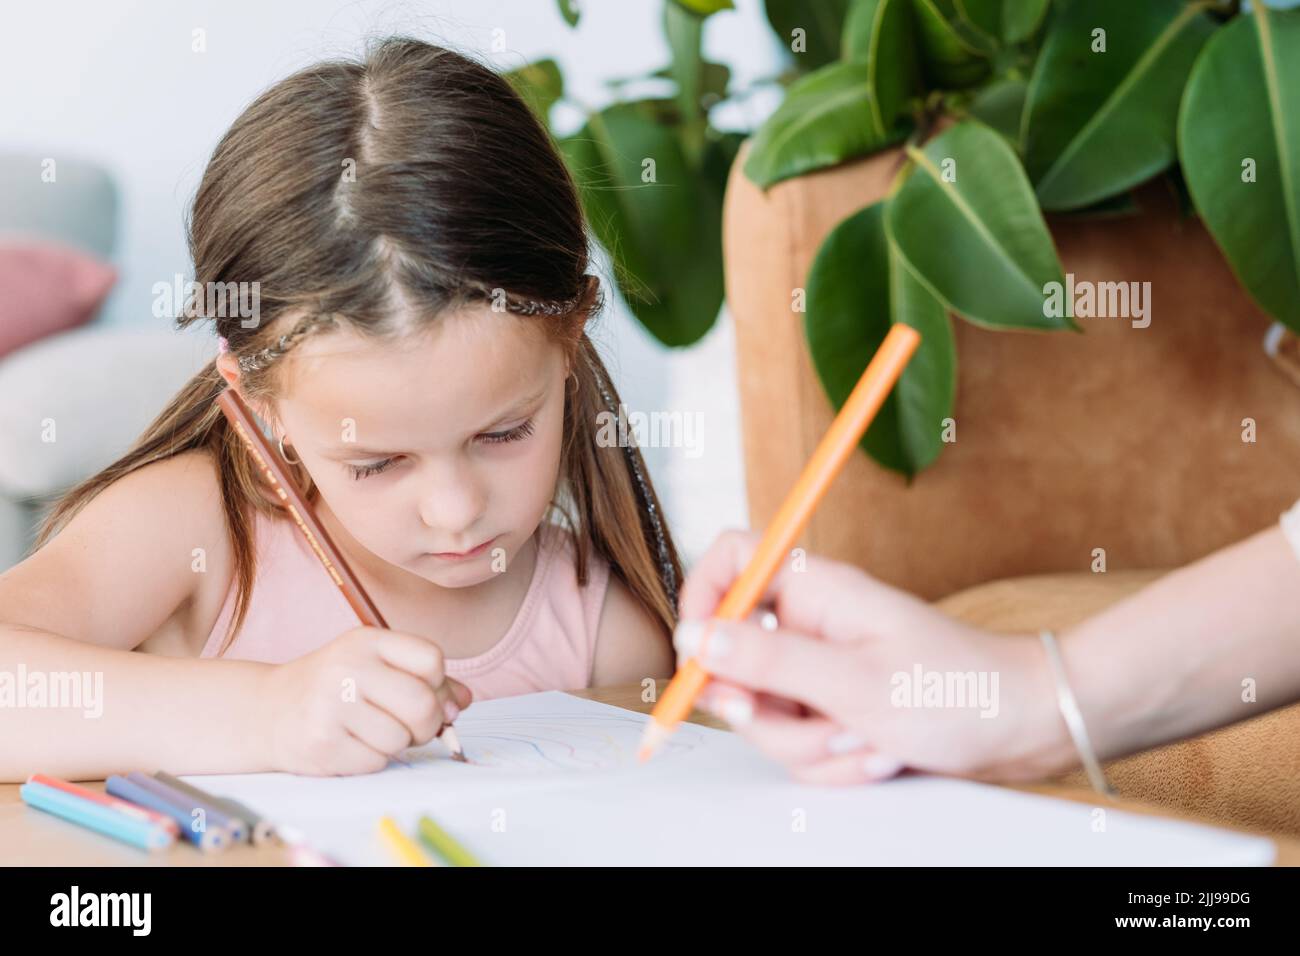 enfants art loisirs peinture art hobby fille dessiner Banque D'Images